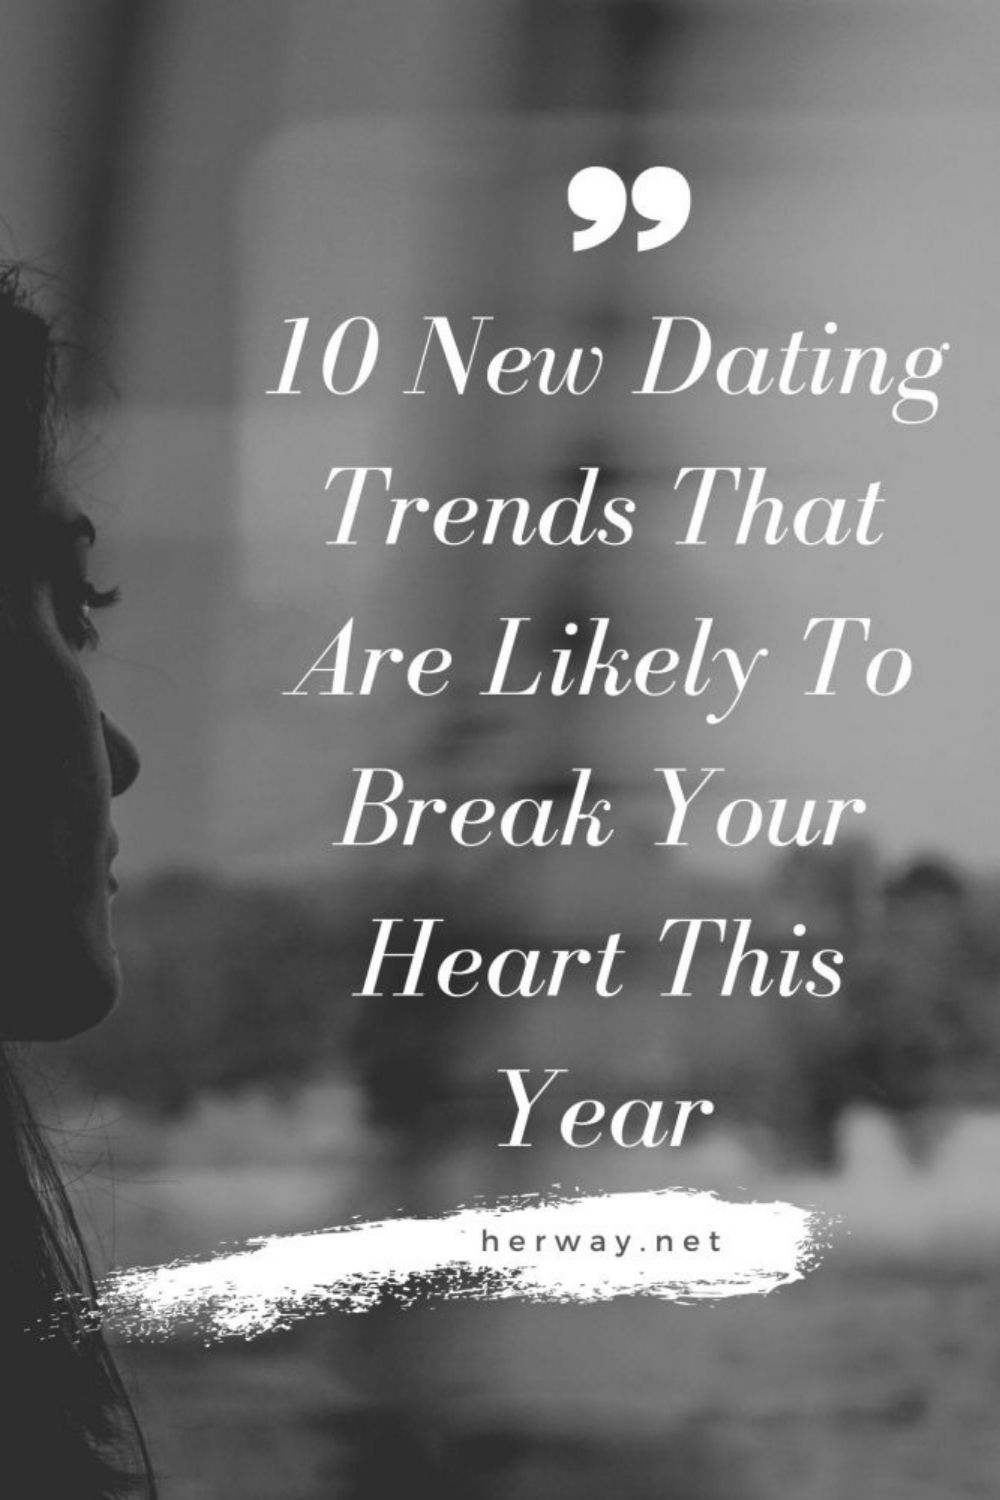 10 nuove tendenze di appuntamenti che probabilmente vi spezzeranno il cuore quest'anno